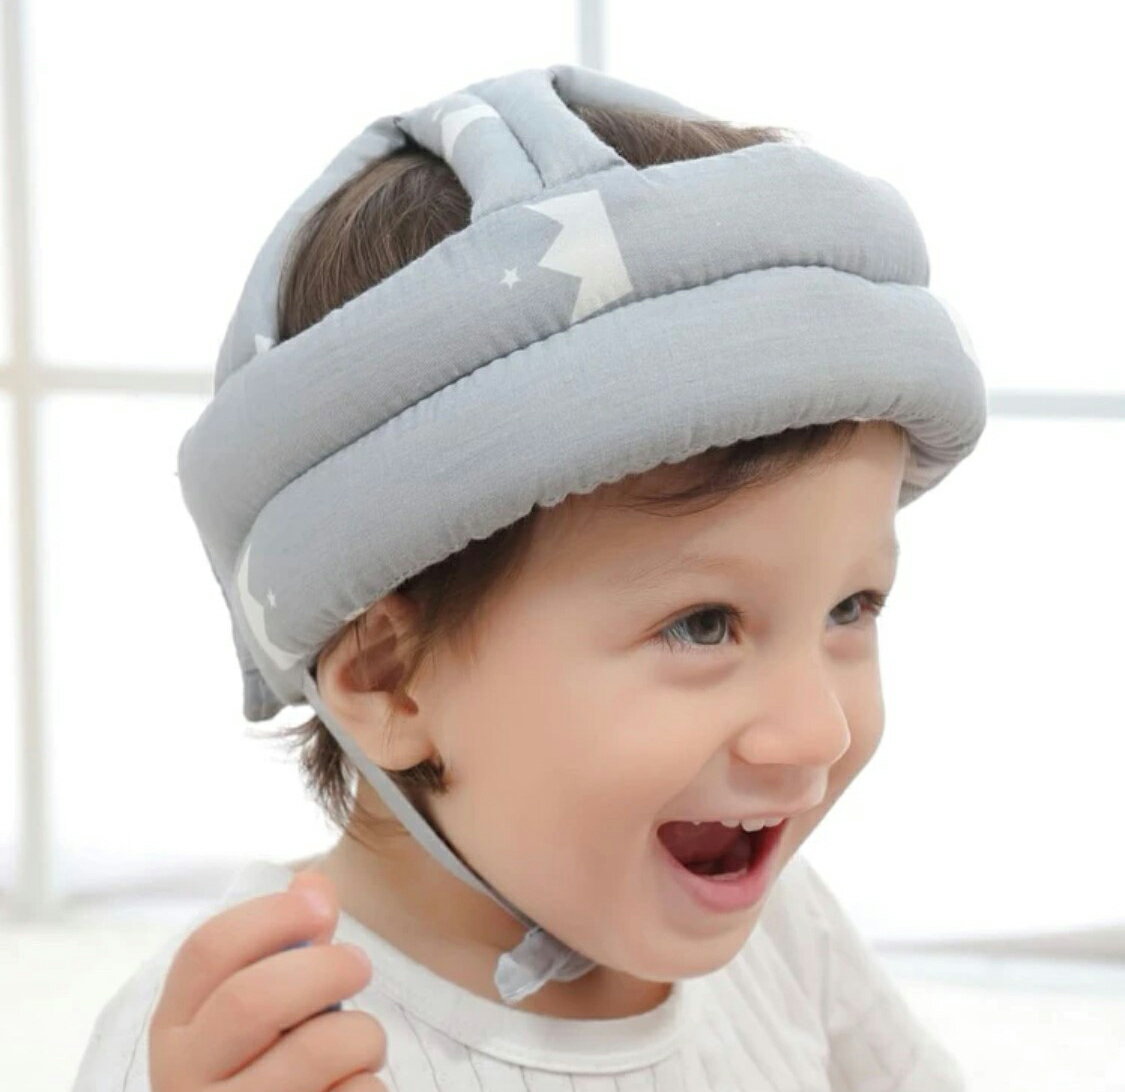 コットン素材のベビー転倒防止ヘルメットヘッドガード。 赤ちゃんの頭部をやさしく守ります。クッション性のあるスポンジを使用で軽くて装着も楽ちん リュックタイプとは違い、頭部の後ろ側だけでなく360度カバーできる安心のデザイン。 マジックテープでサイズ調整可能で、6ヶ月～3歳ぐらいまで長期間ピッタリ使えます。 ハイハイ時期、立ち上がり時期、よちよち歩き時期や魔の2歳時期もしっかり頭部を守ります。　